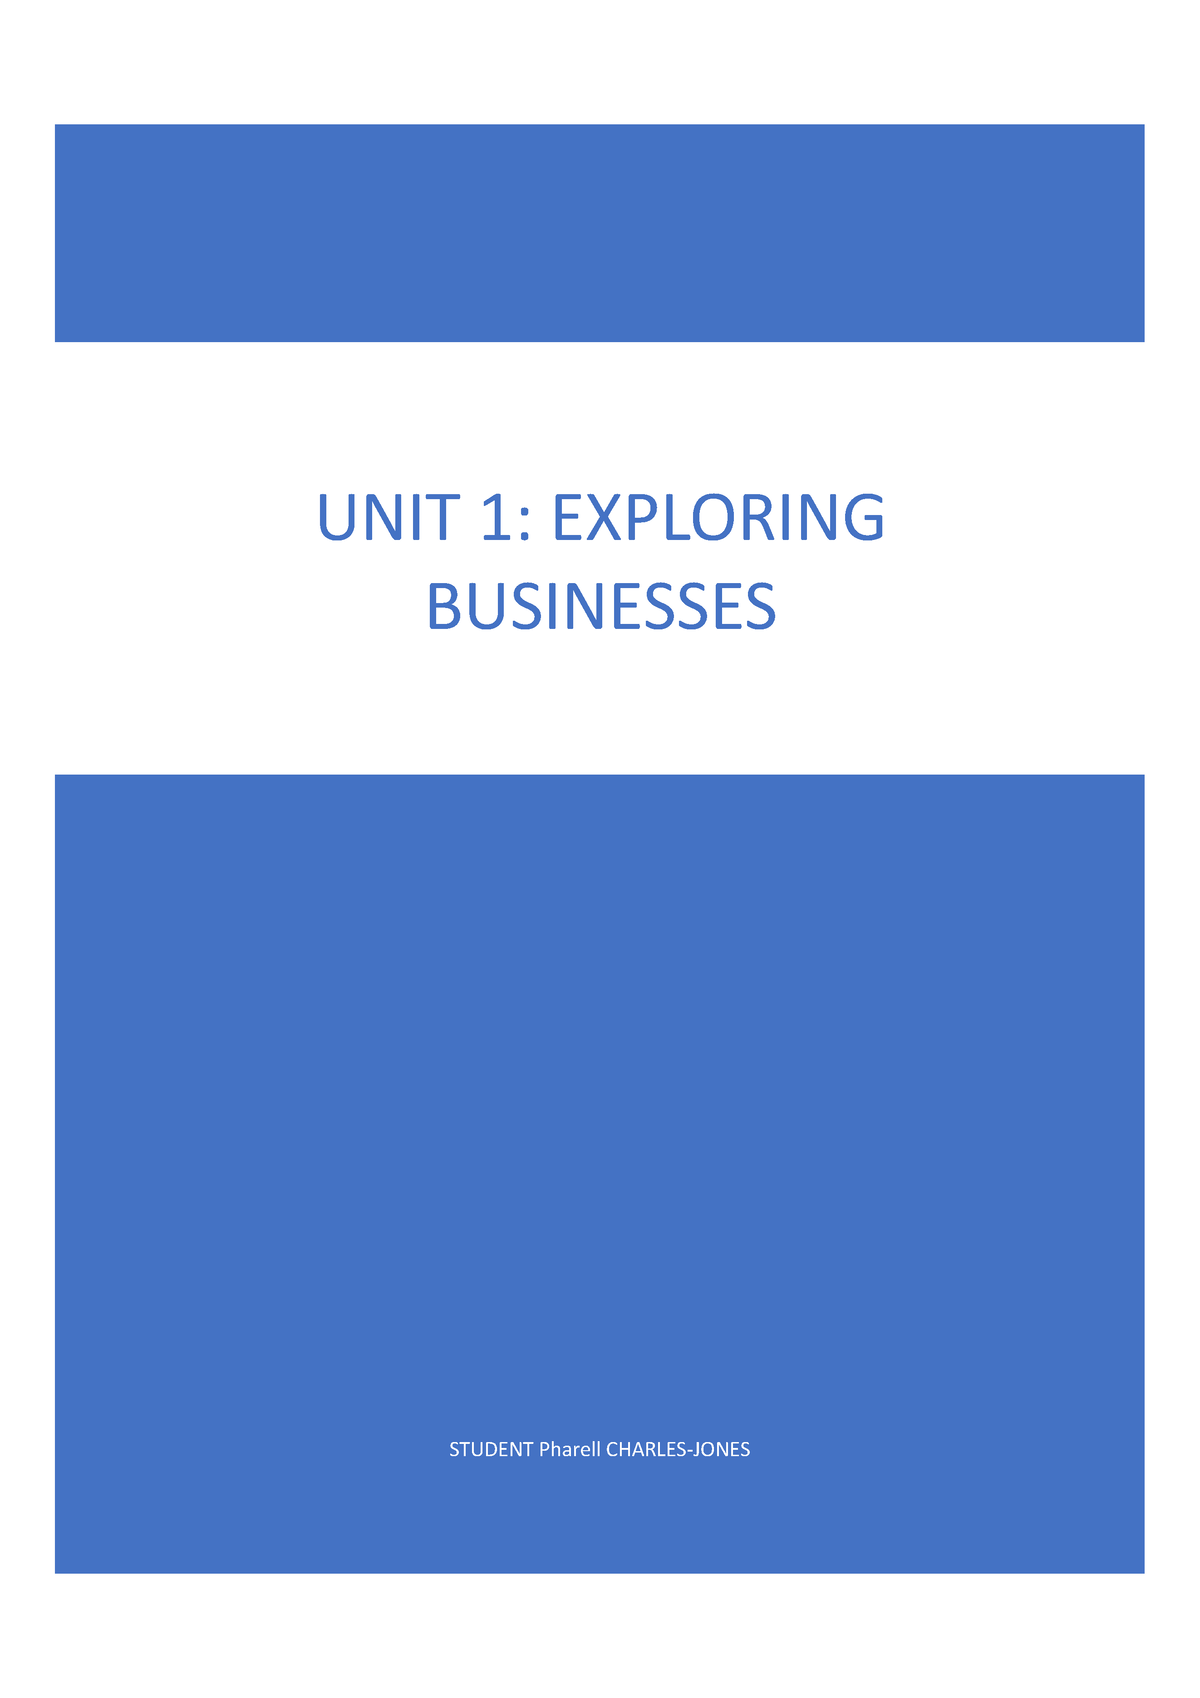 btec business unit 1 coursework